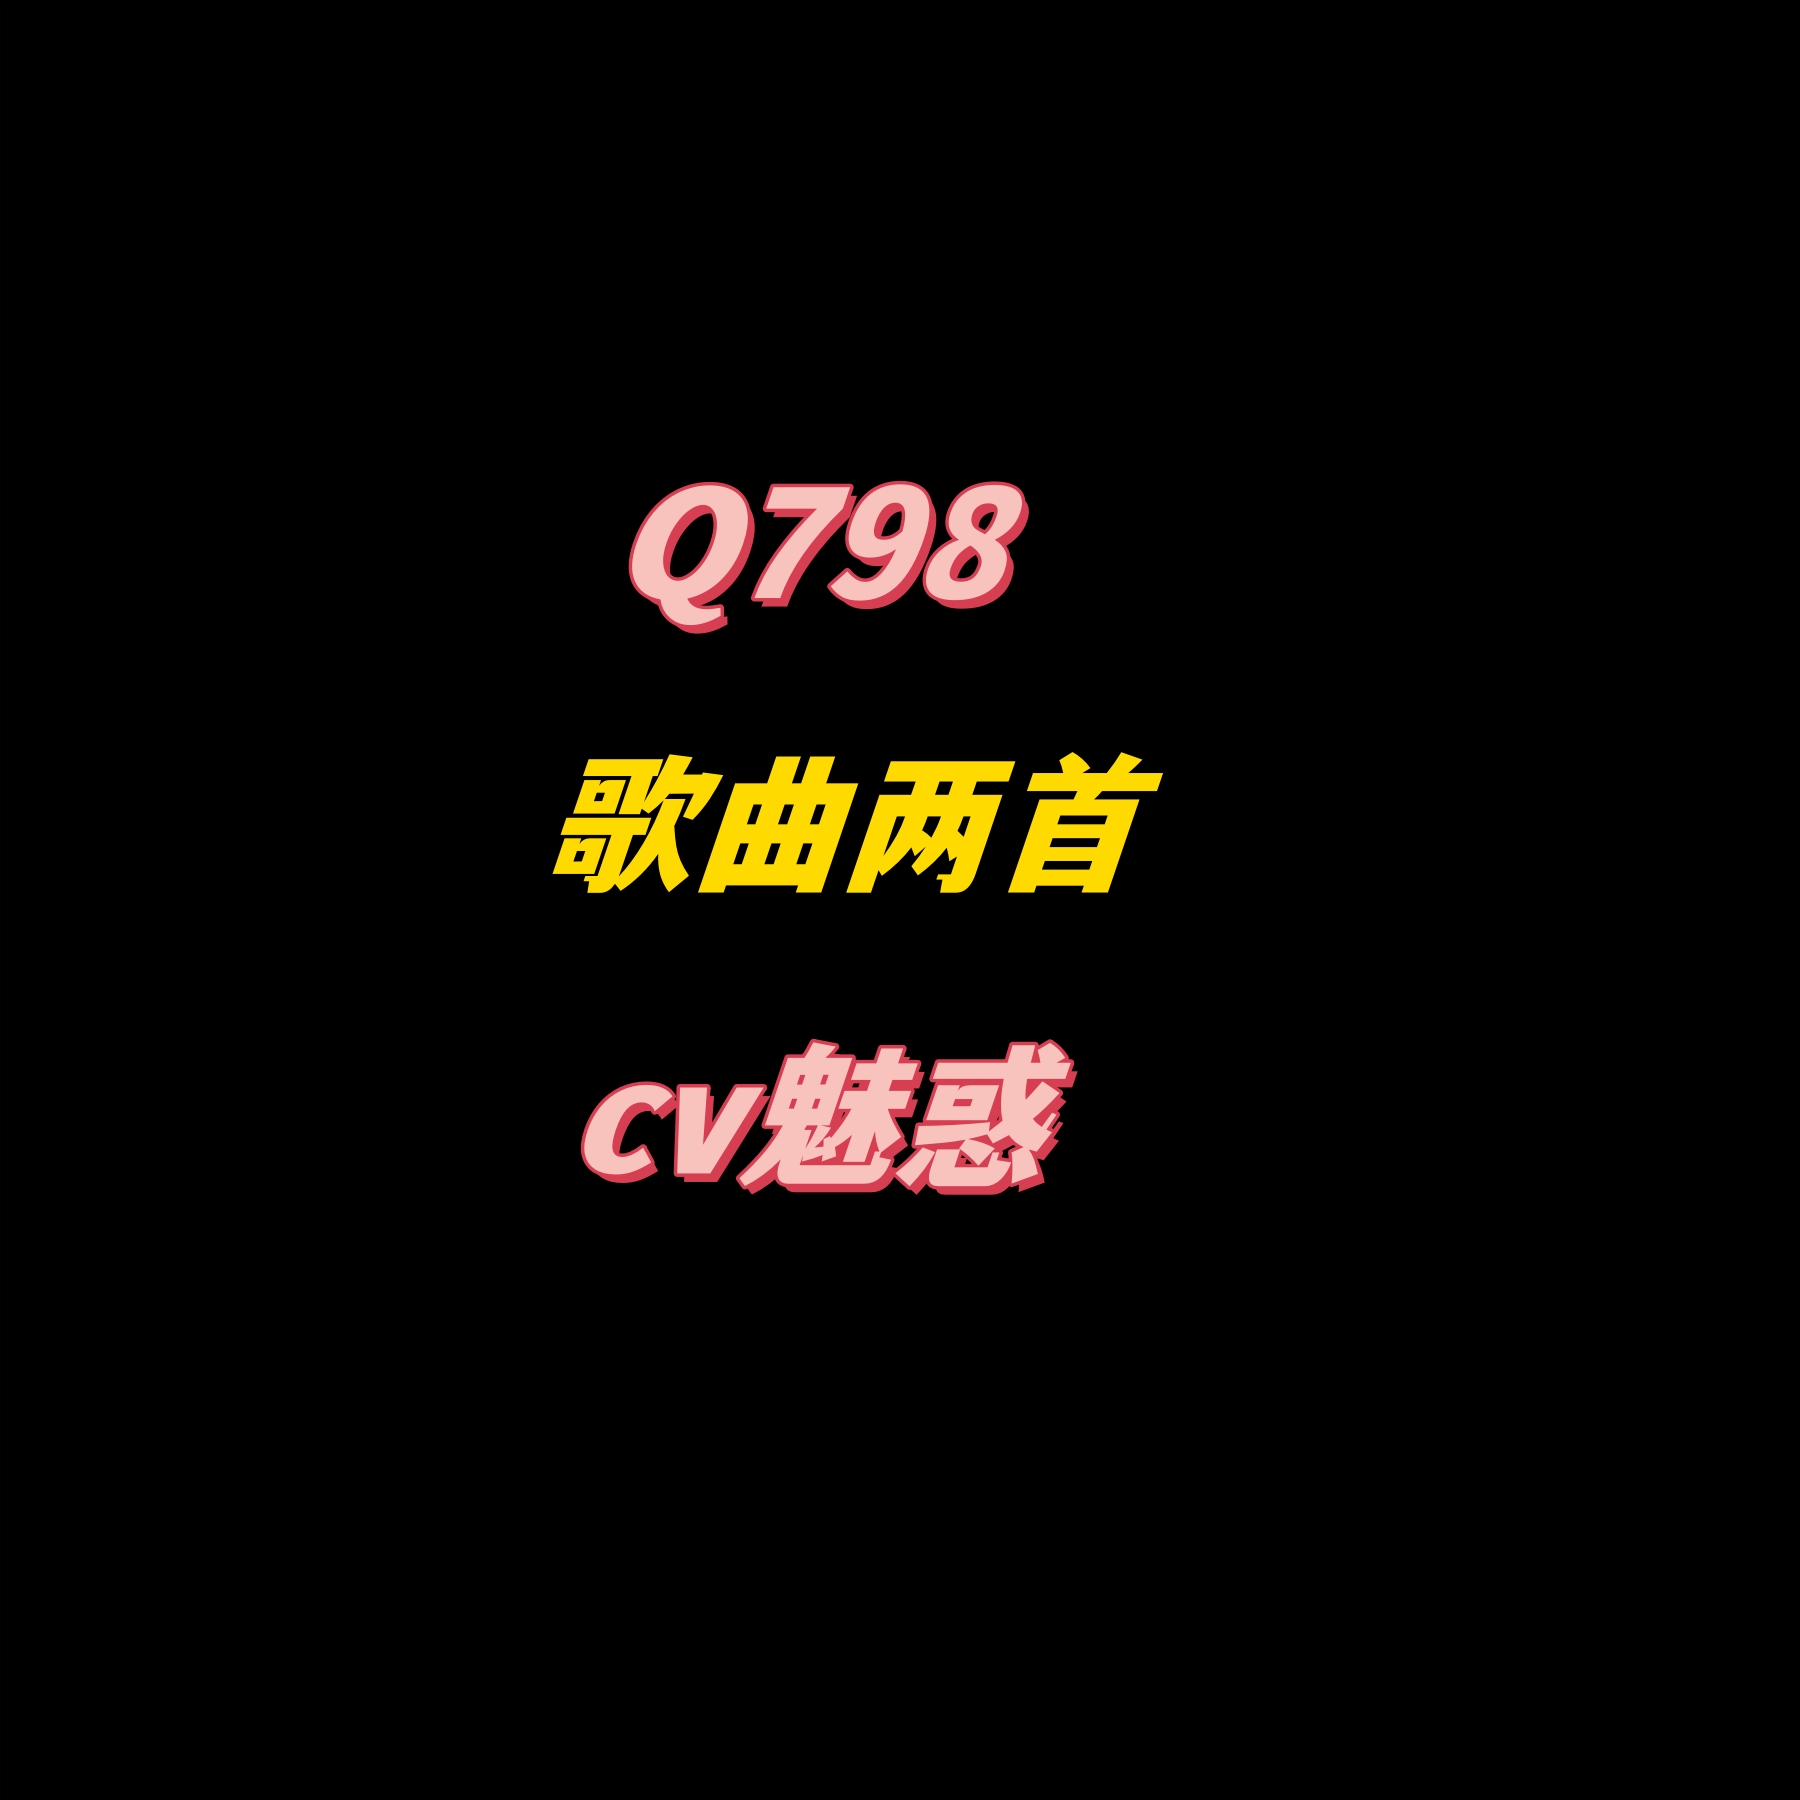 密码保护：Q798歌曲两首-cv魅惑